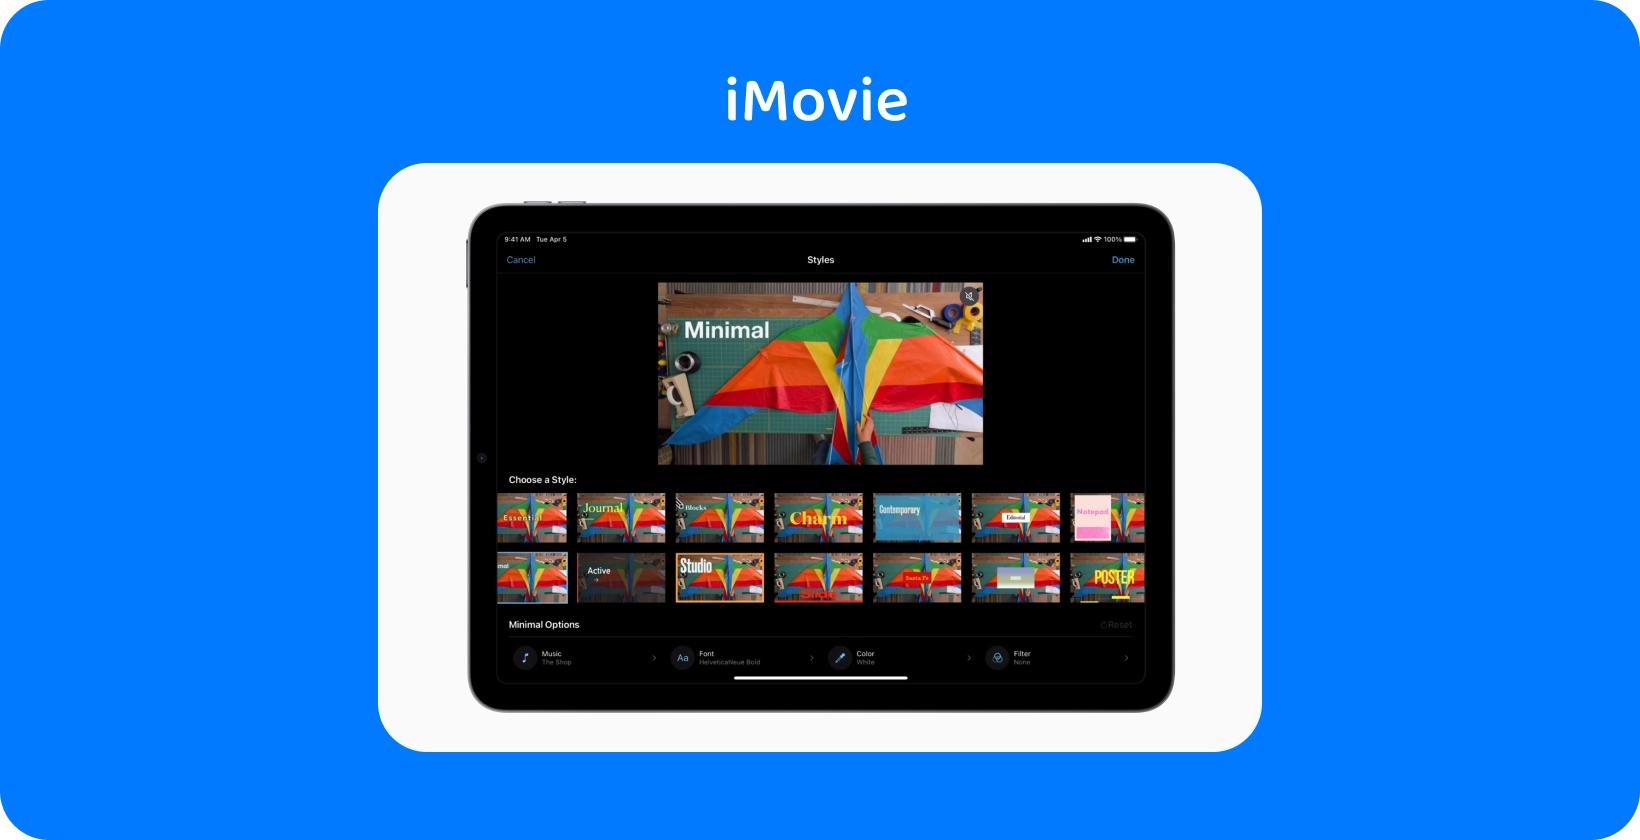 iMovie sur une tablette affichant différents styles de montage vidéo, avec un projet de cerf-volant coloré sur le thème « Minimal ».